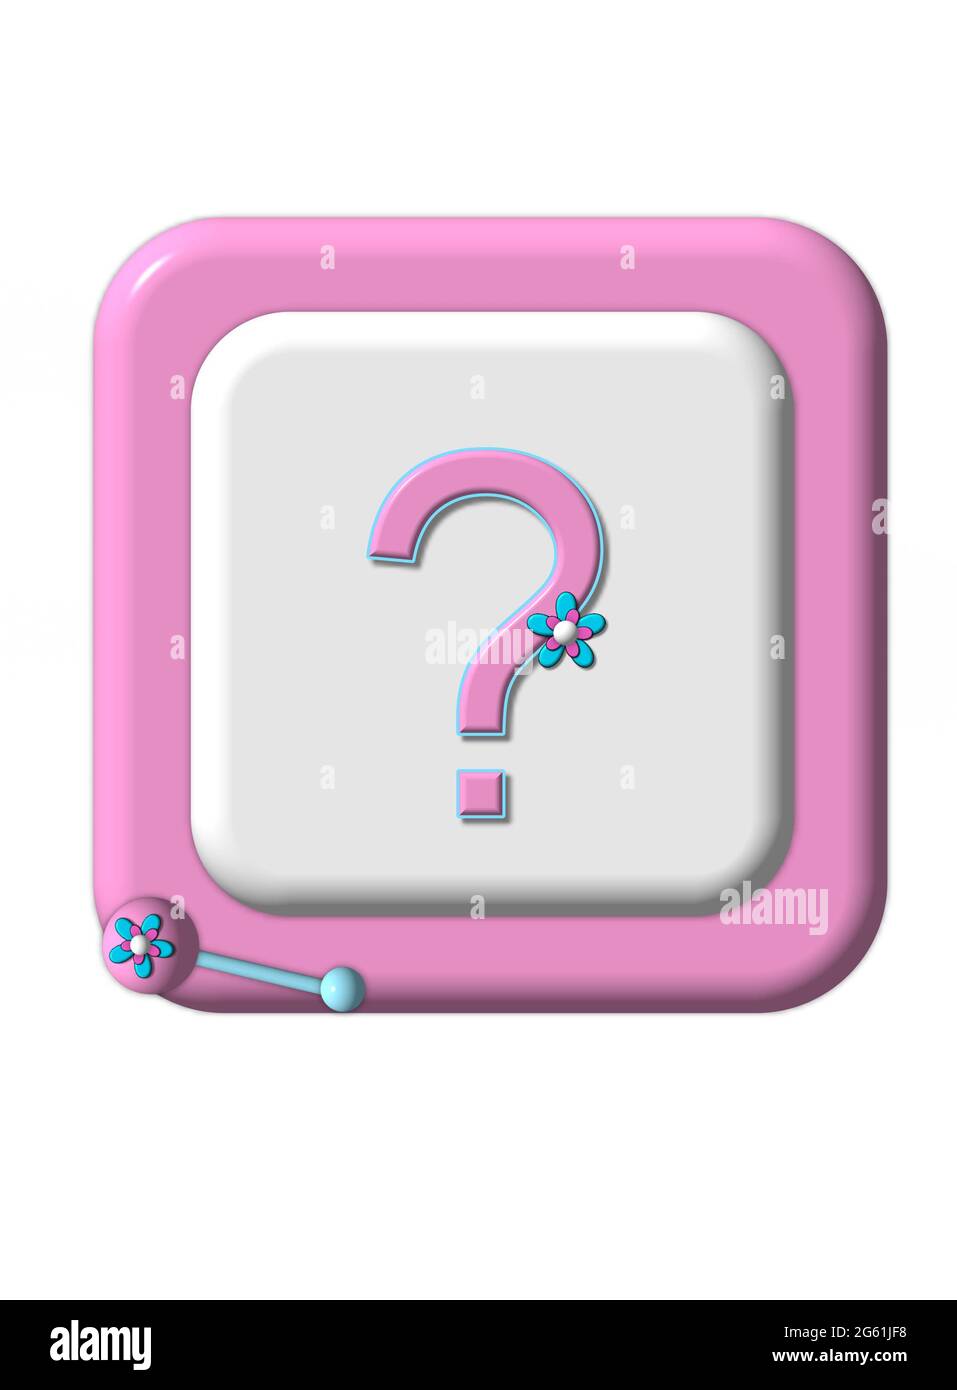 El bloque de bebé con borde rosa tiene un signo de interrogación y está rodeado de juguetes para bebés. La ilustración podría representar surpises, género desconocido, inesperado, sup Foto de stock